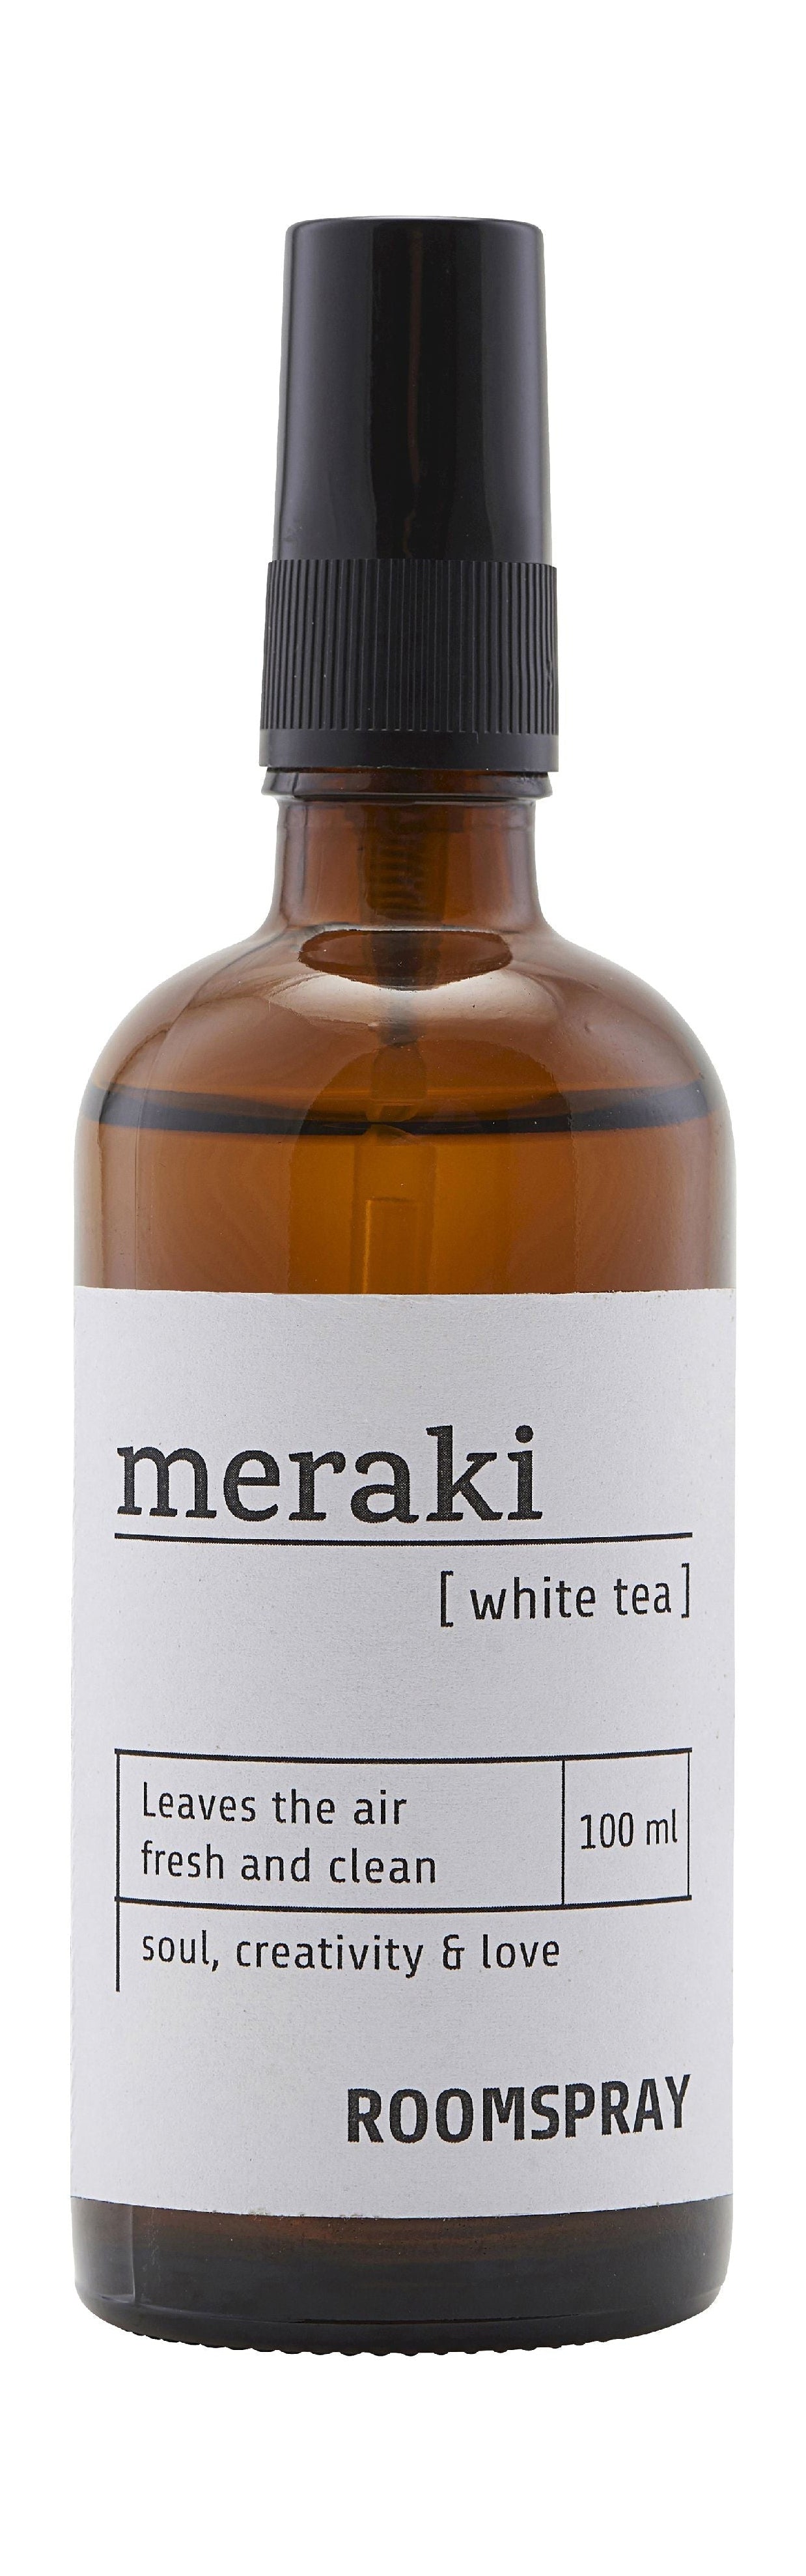 Meraki Room Spray 100 ml, bílý čaj